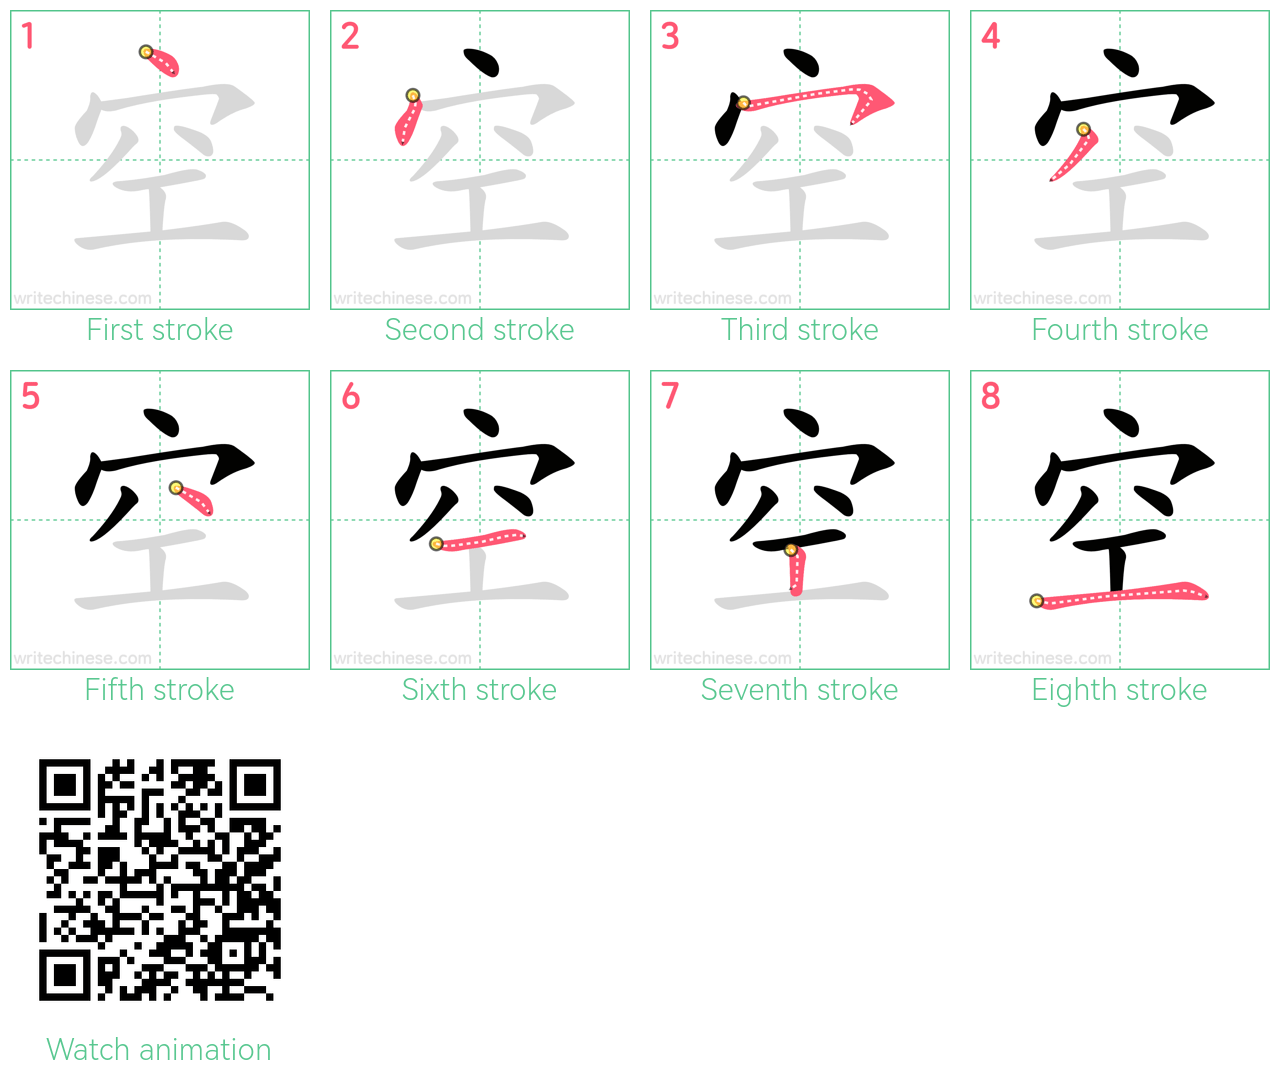 空 step-by-step stroke order diagrams